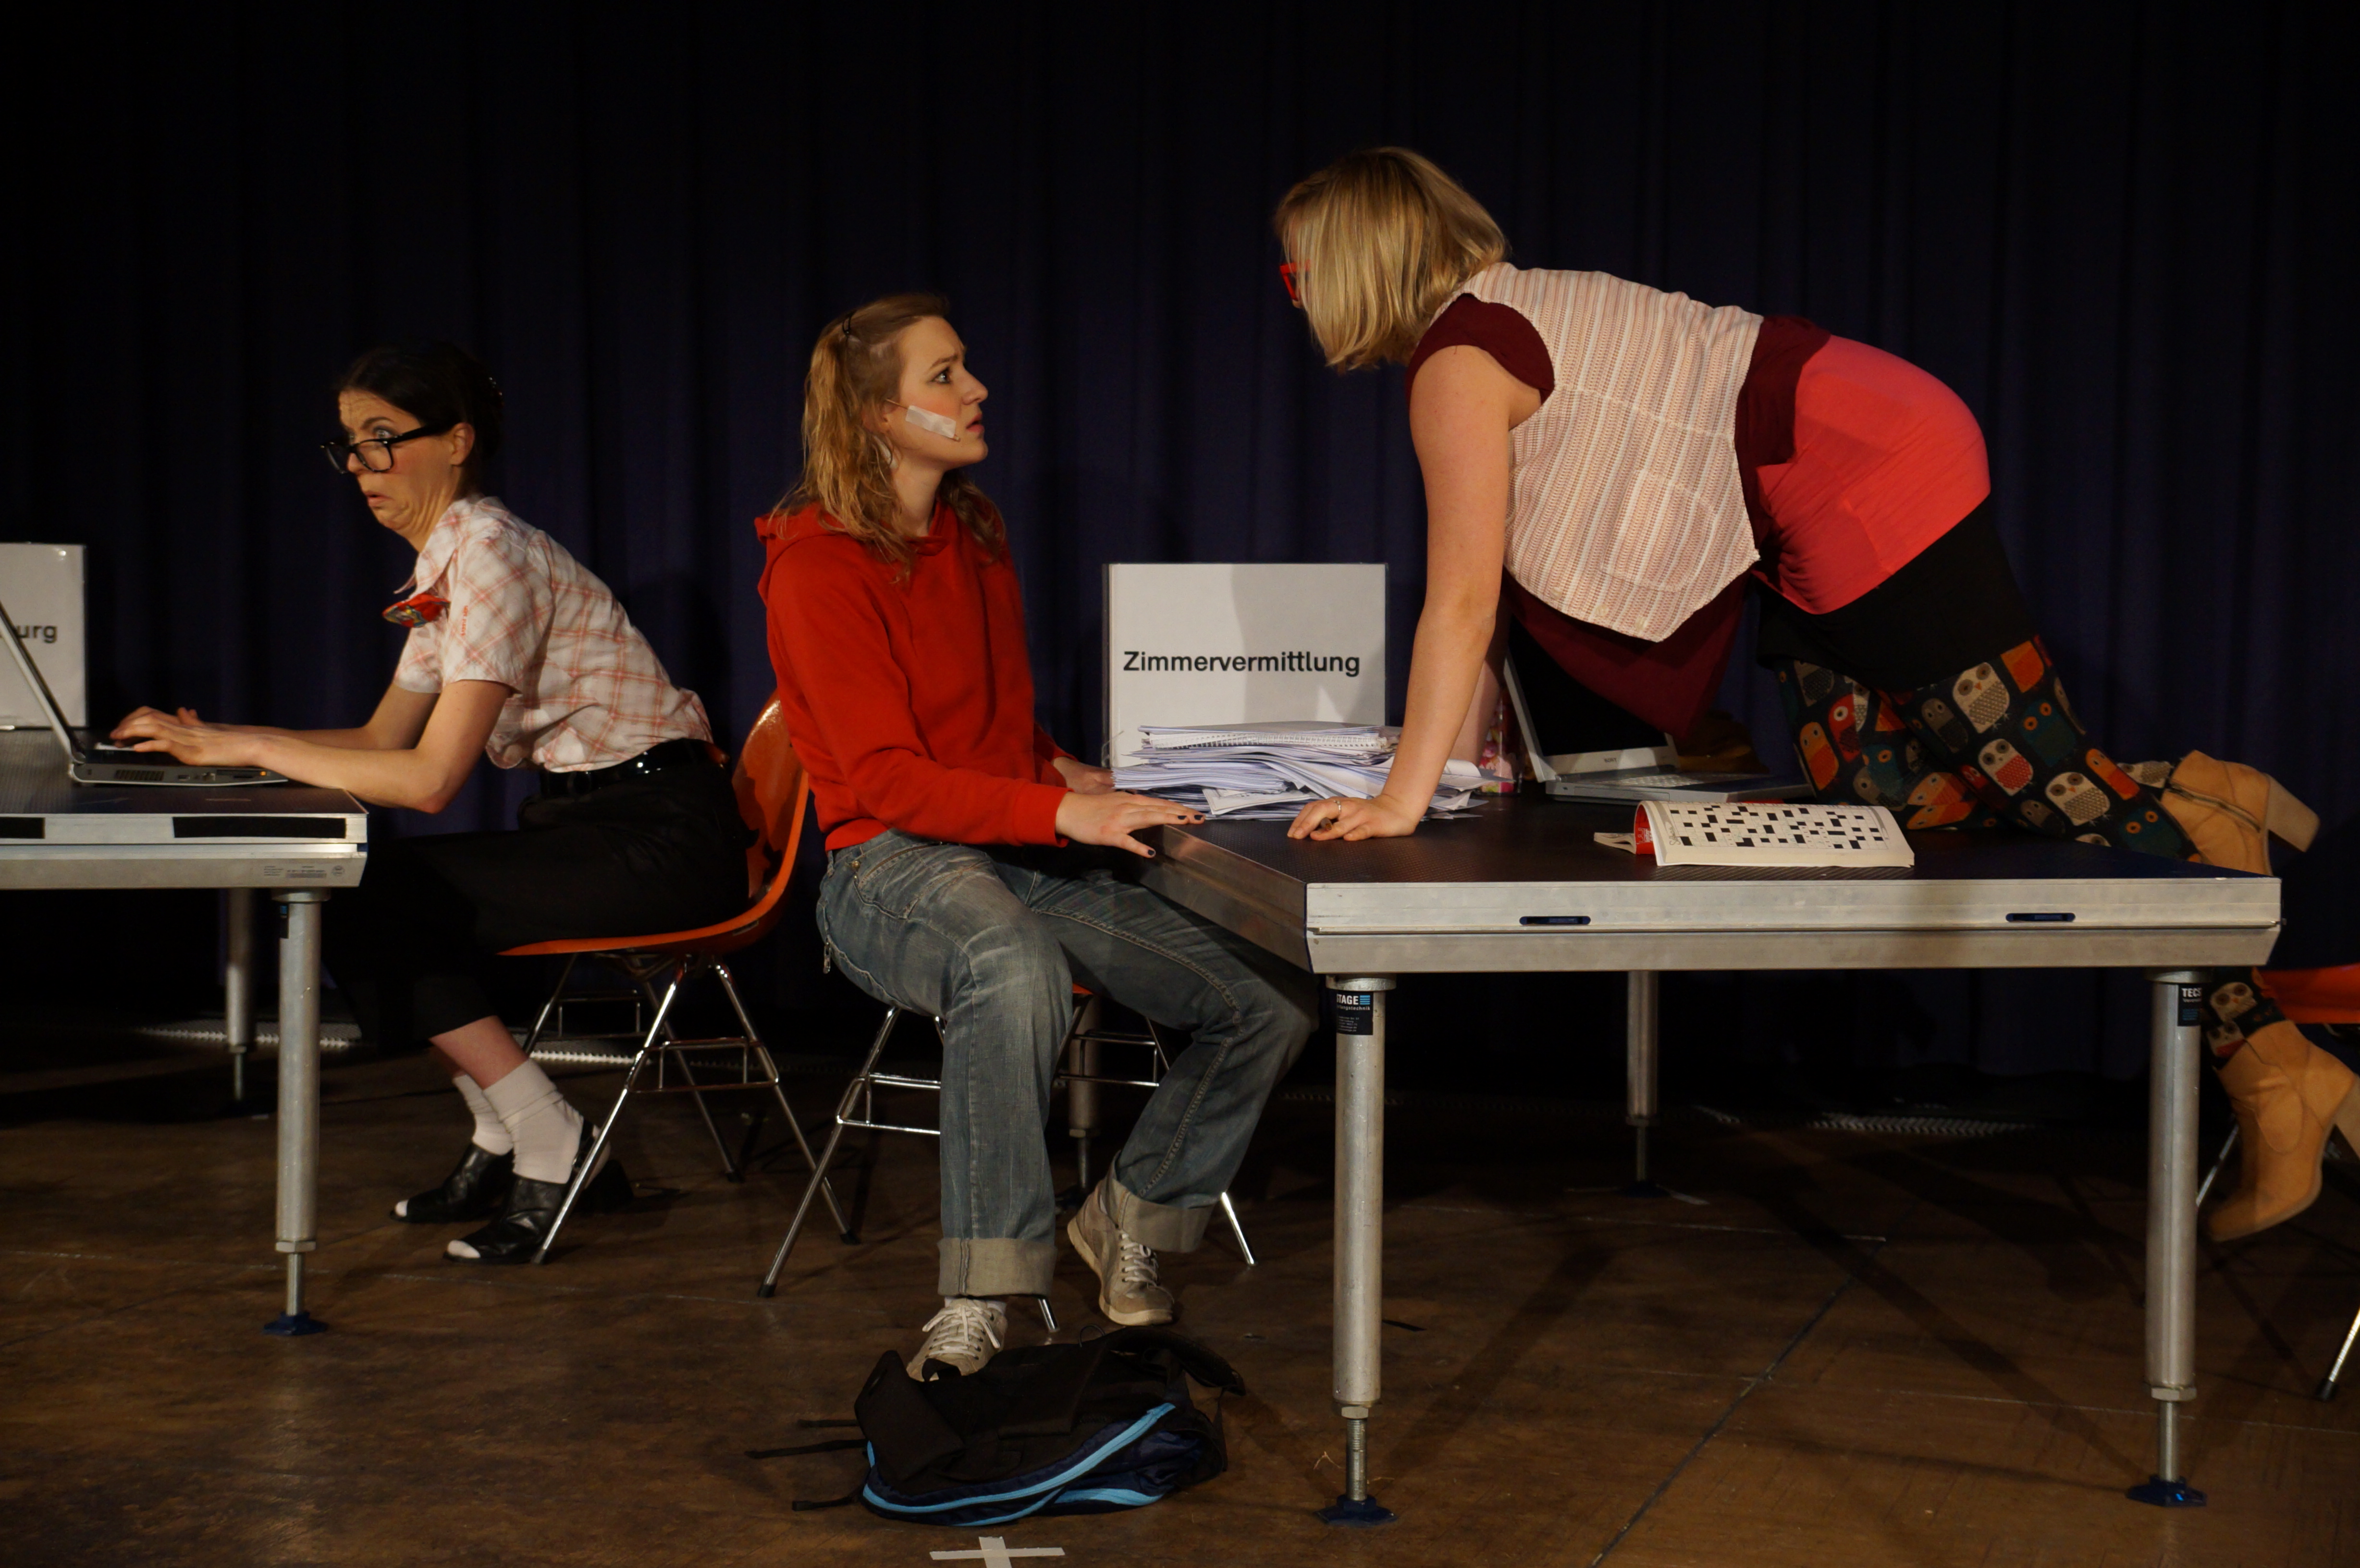 Eine Theateraufführung: auf der Bühne befinden sich zwei Tische und drei Schauspielerinnen: eine links sitzt am Computer. Rechts auf dem Bild, an dem zweiten Tisch befinden sich die zwei anderen Schauspielerinnen: eine sitzt auf einem Stuhl und schaut verwundert auf die dritte Frau, die in diesem Moment auf den Tisch steigt.